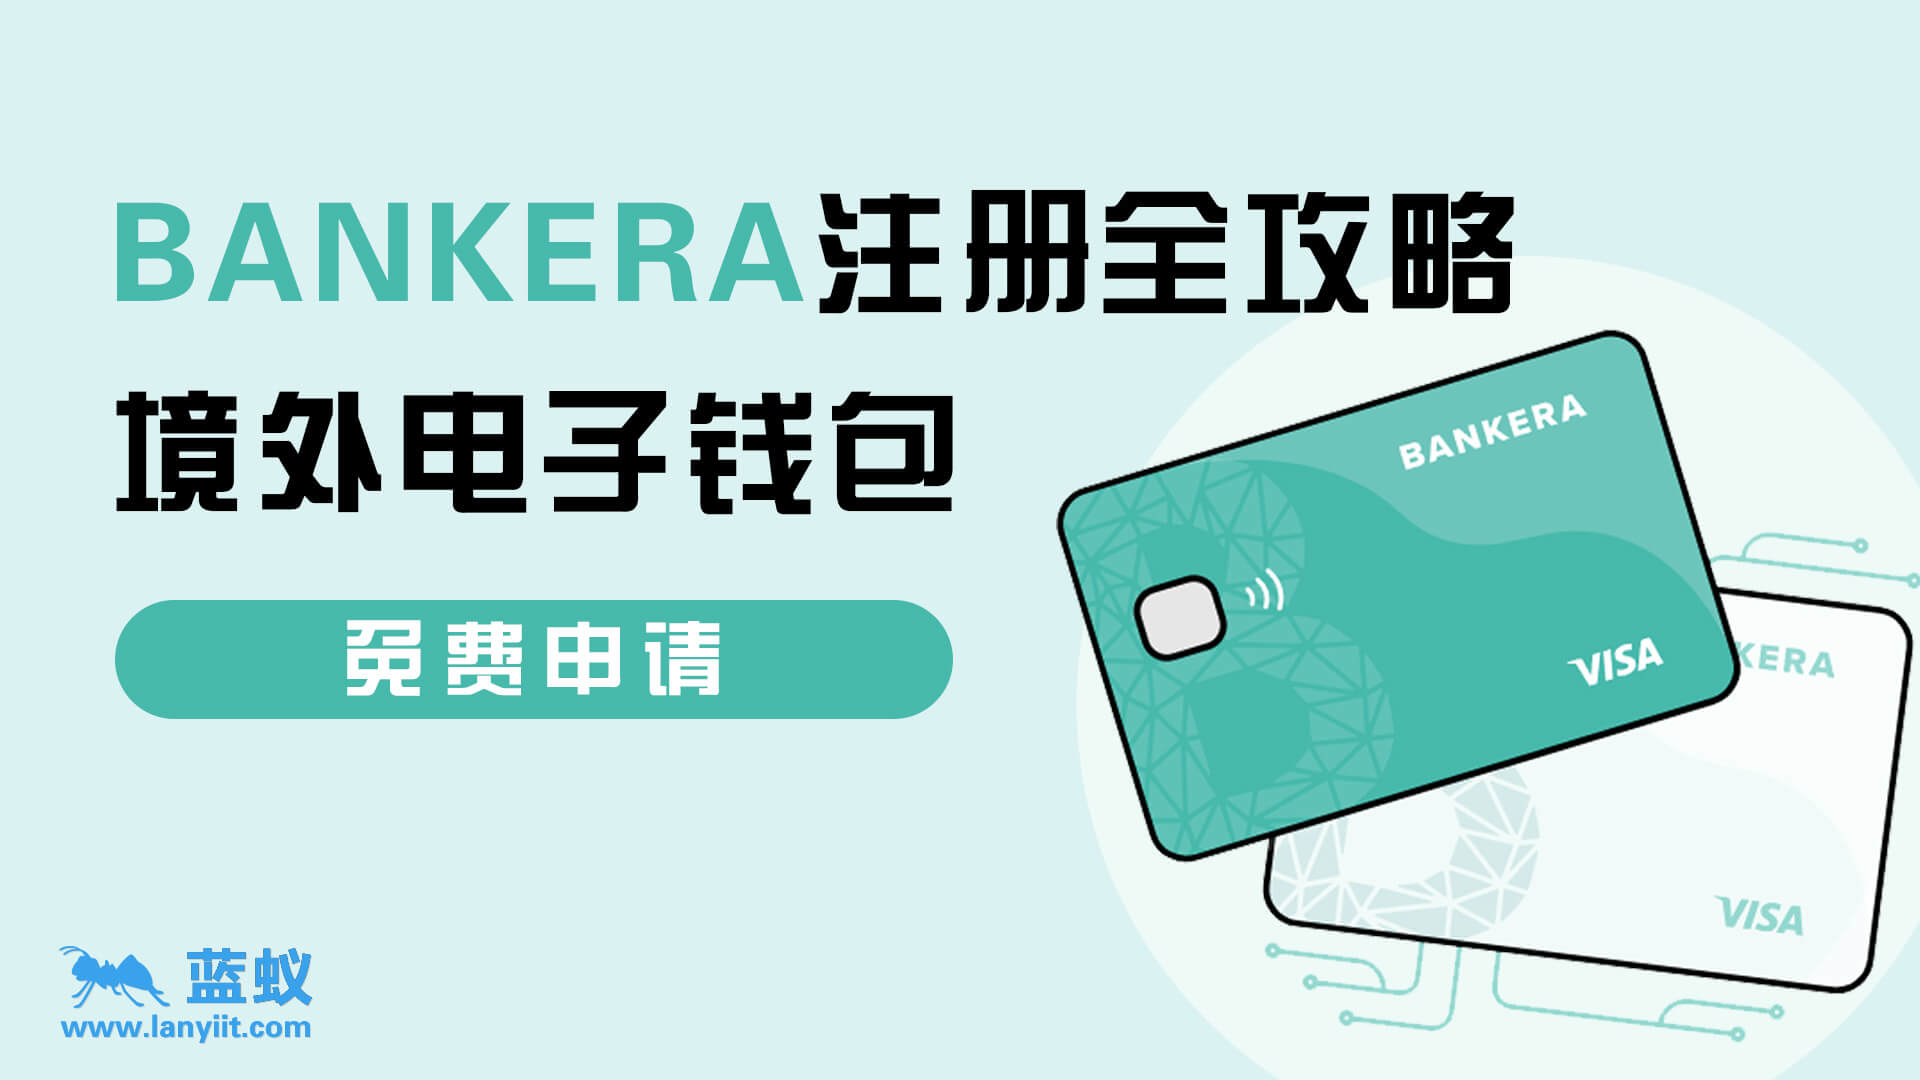 Bankera电子钱包注册指南：中国大陆居民如何成功注册并获得便捷的电子钱包服务？